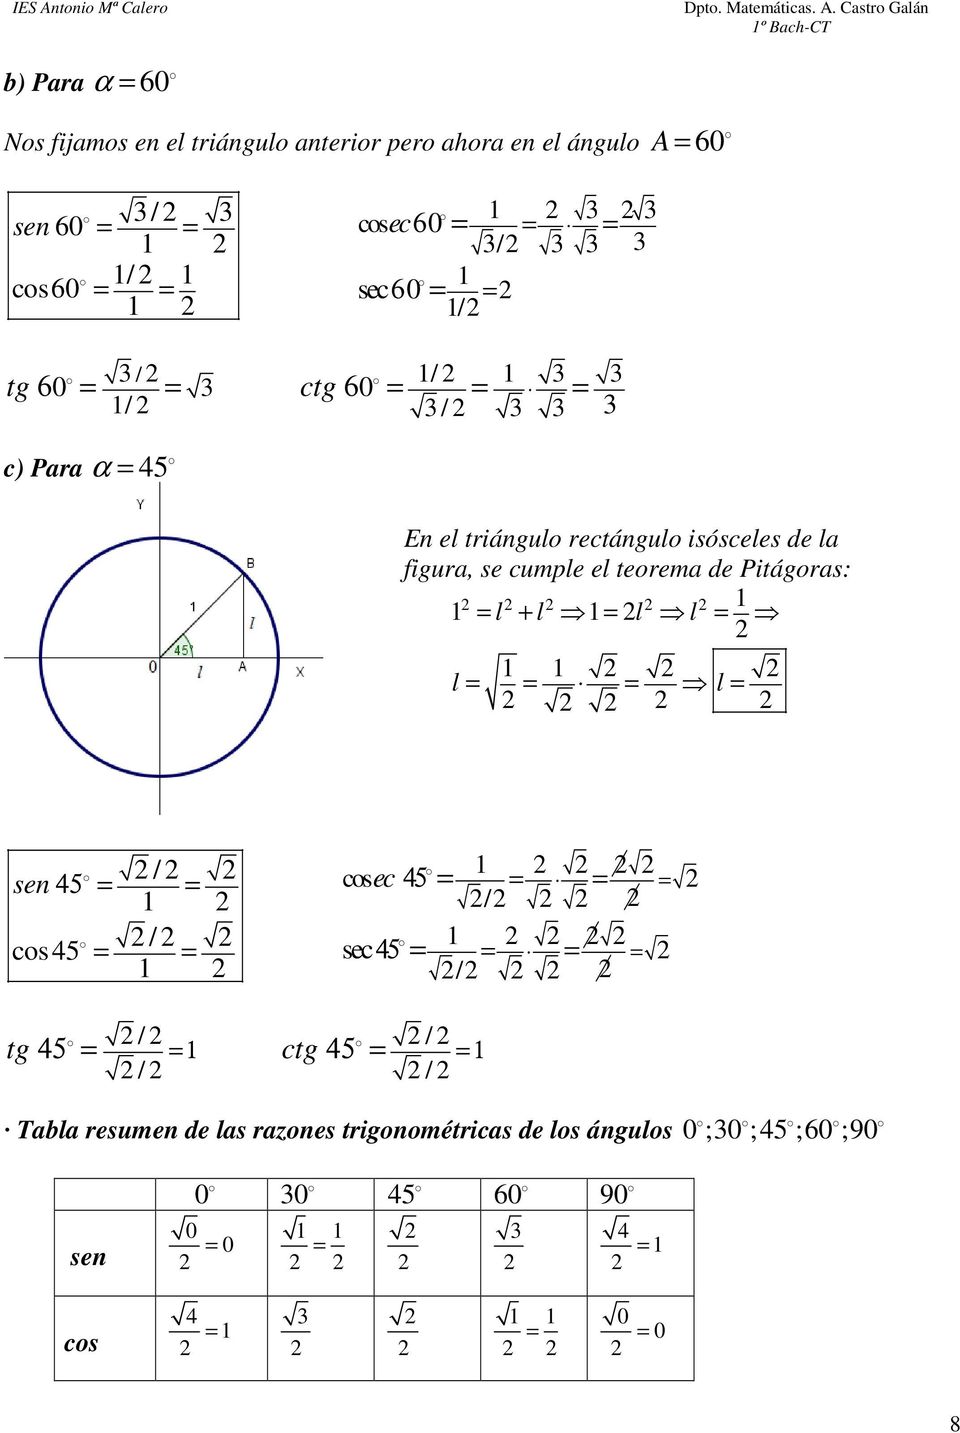 cumple el teorema de Pitágoras: 1 l + l 1 l l 1 1 1 l l sen 45 / 1 cos45 / 1 1 cos ec 45 / 1 sec 45 / tg / / 1 ctg 1 / / 45 45